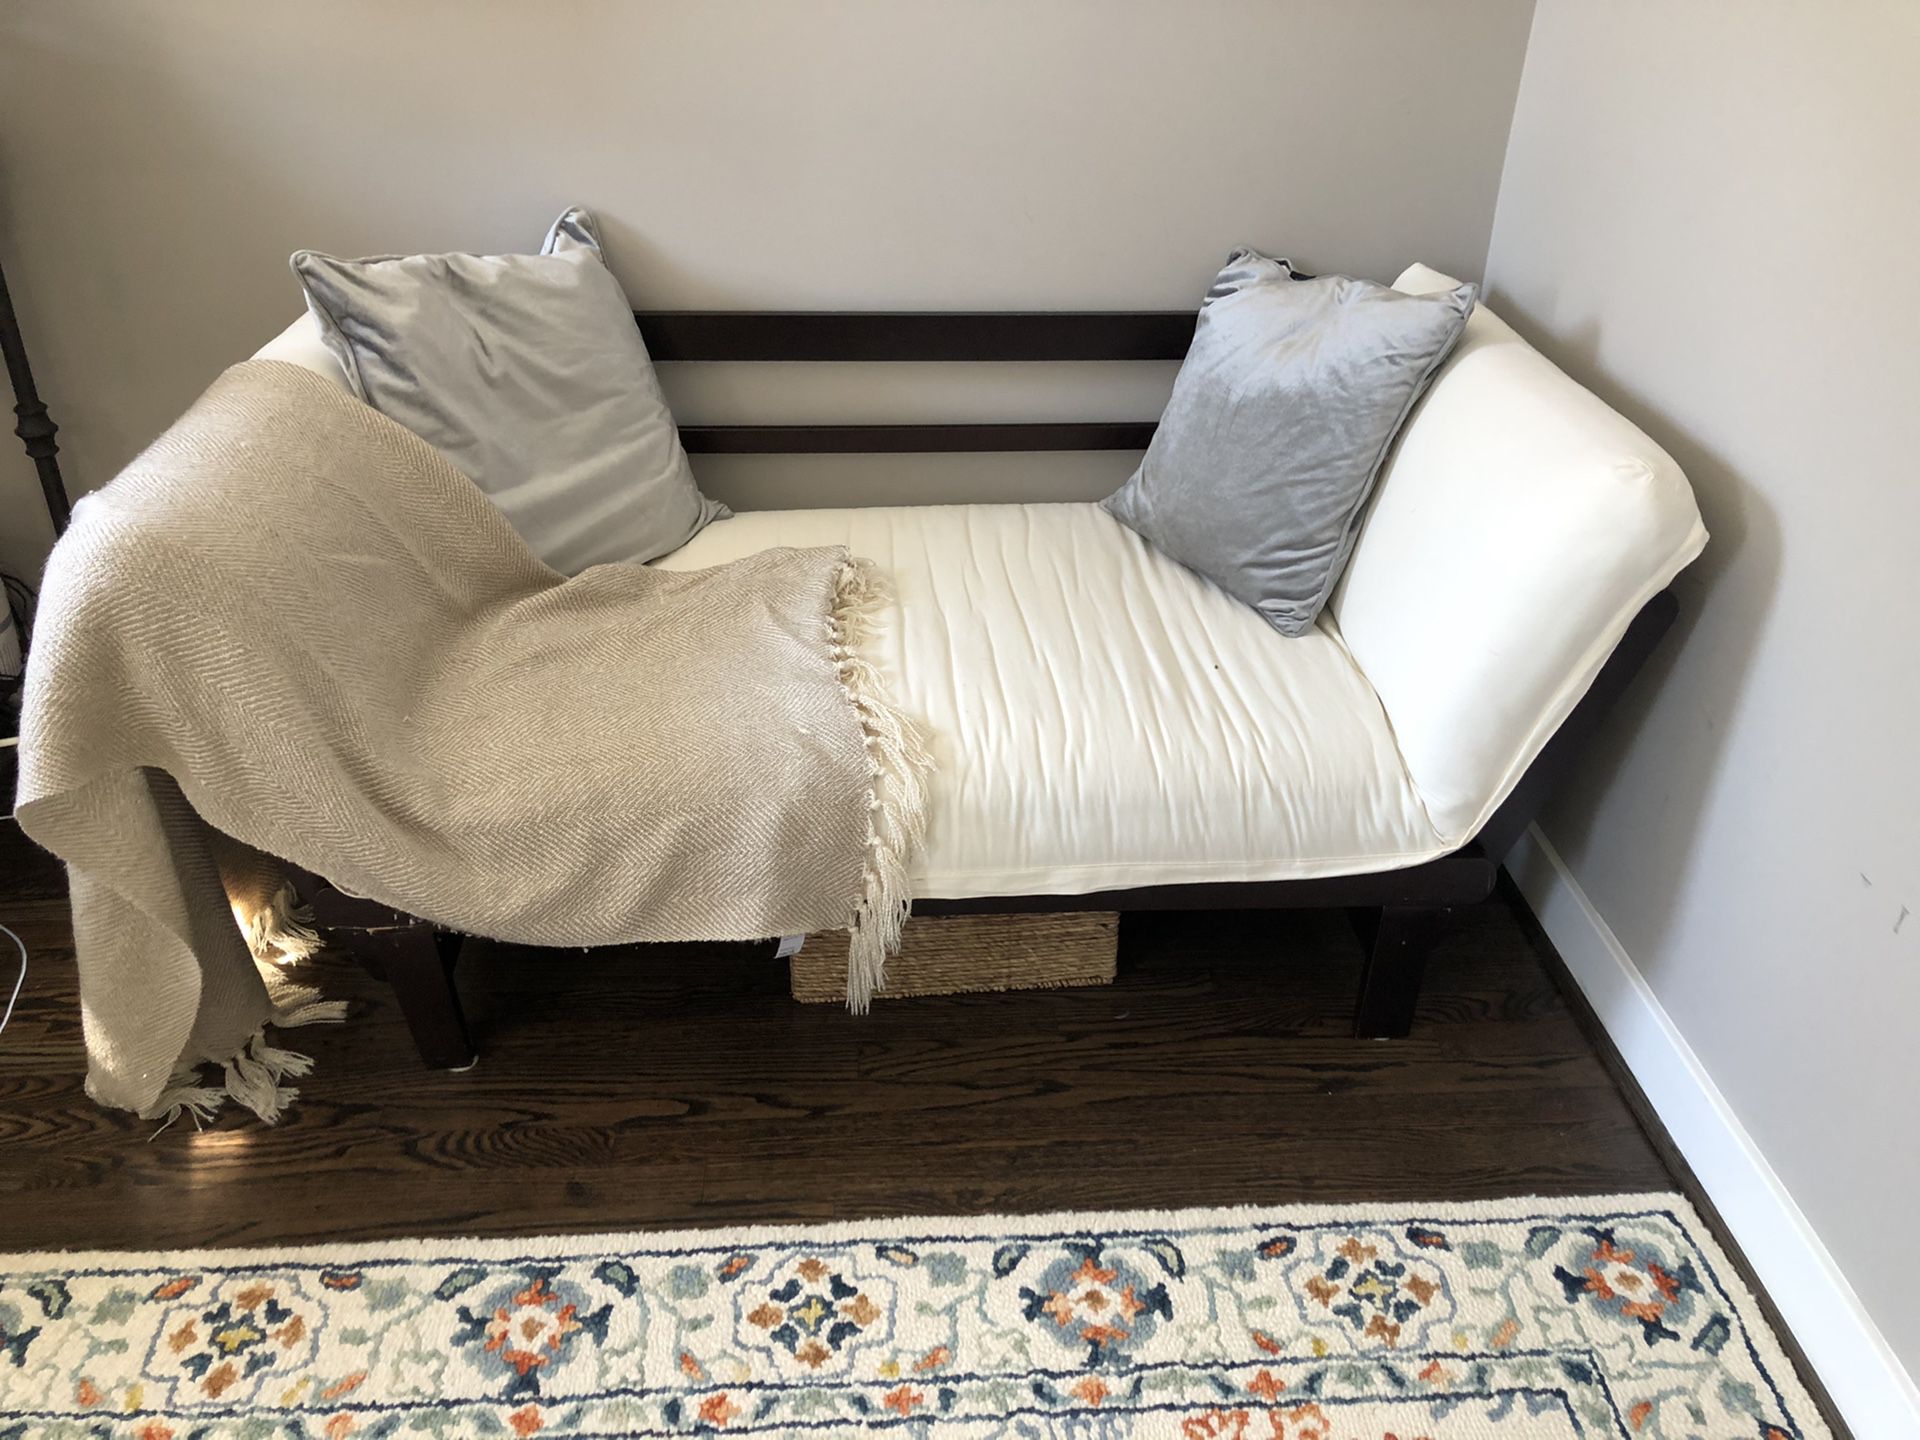 Small futon love seat